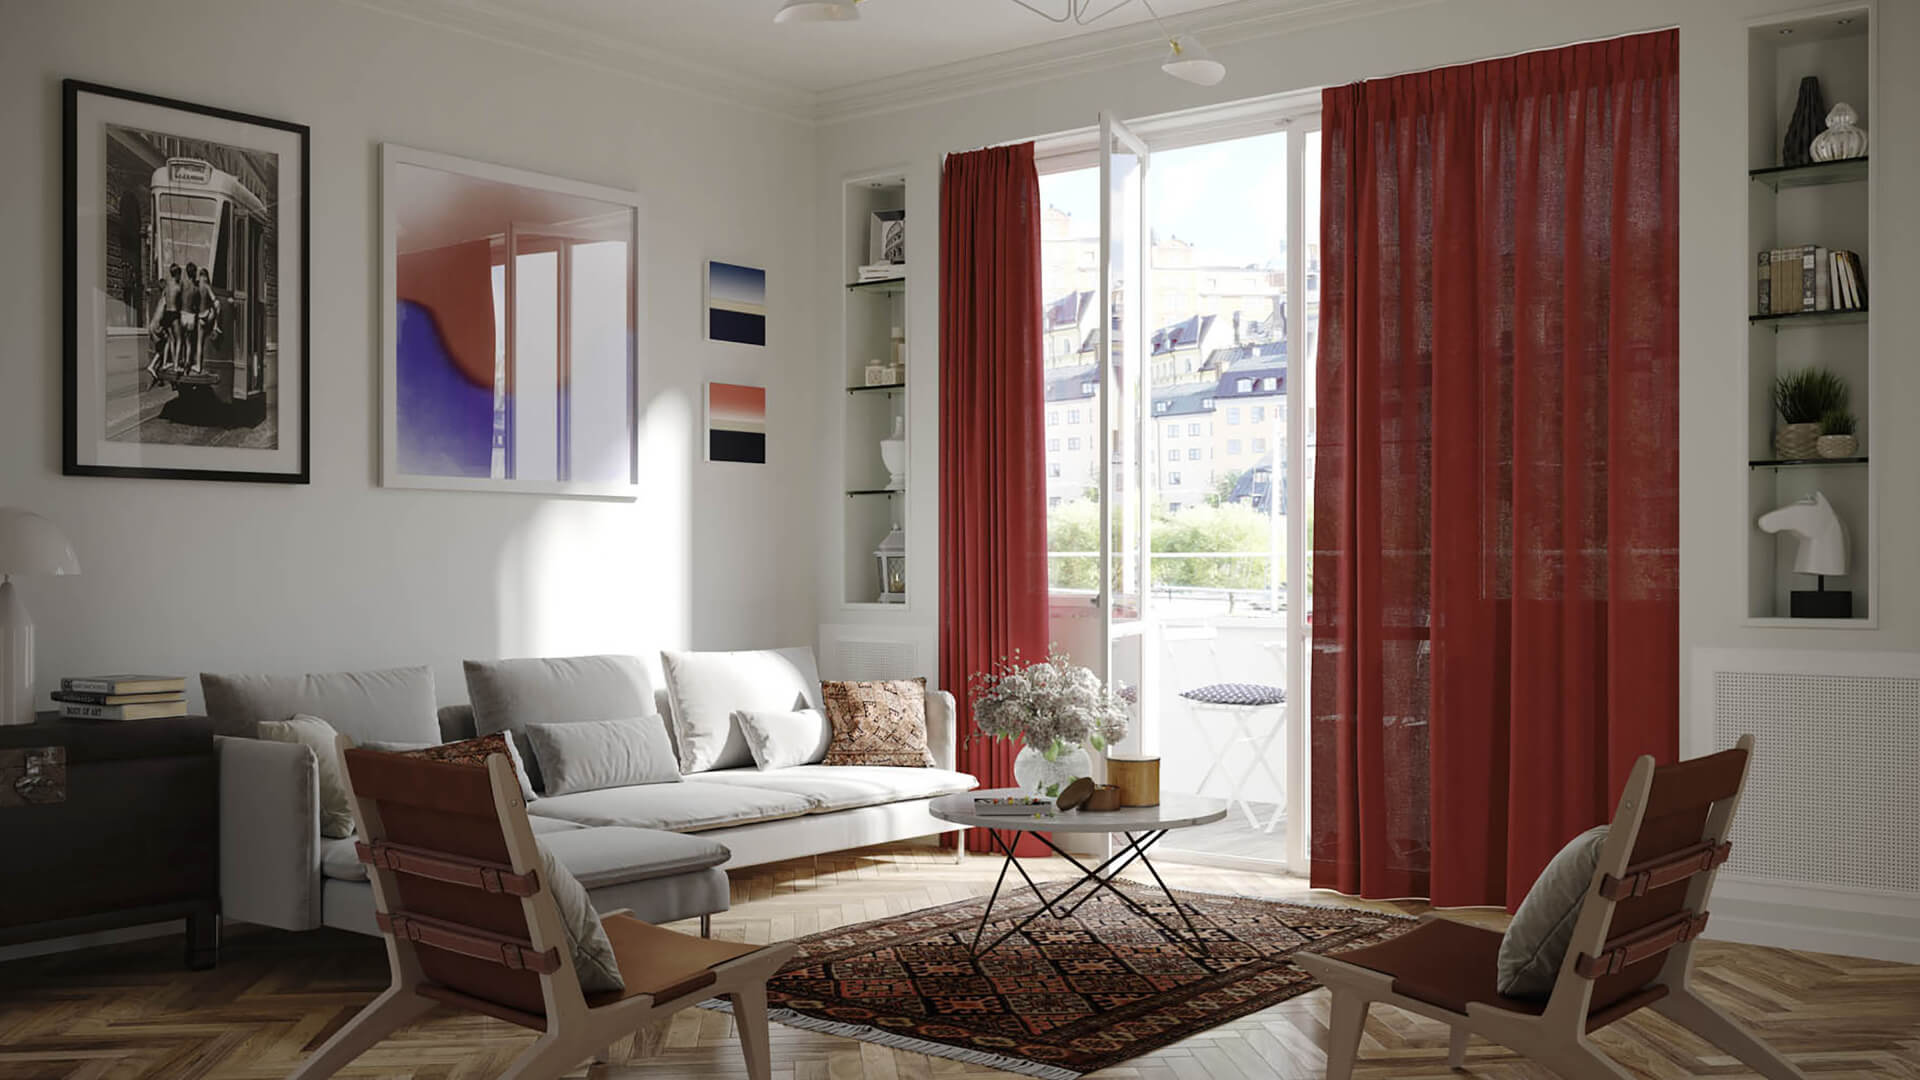 Blog IDW - Come dare un nuovo look al tuo appartamento utilizzando i tessuti